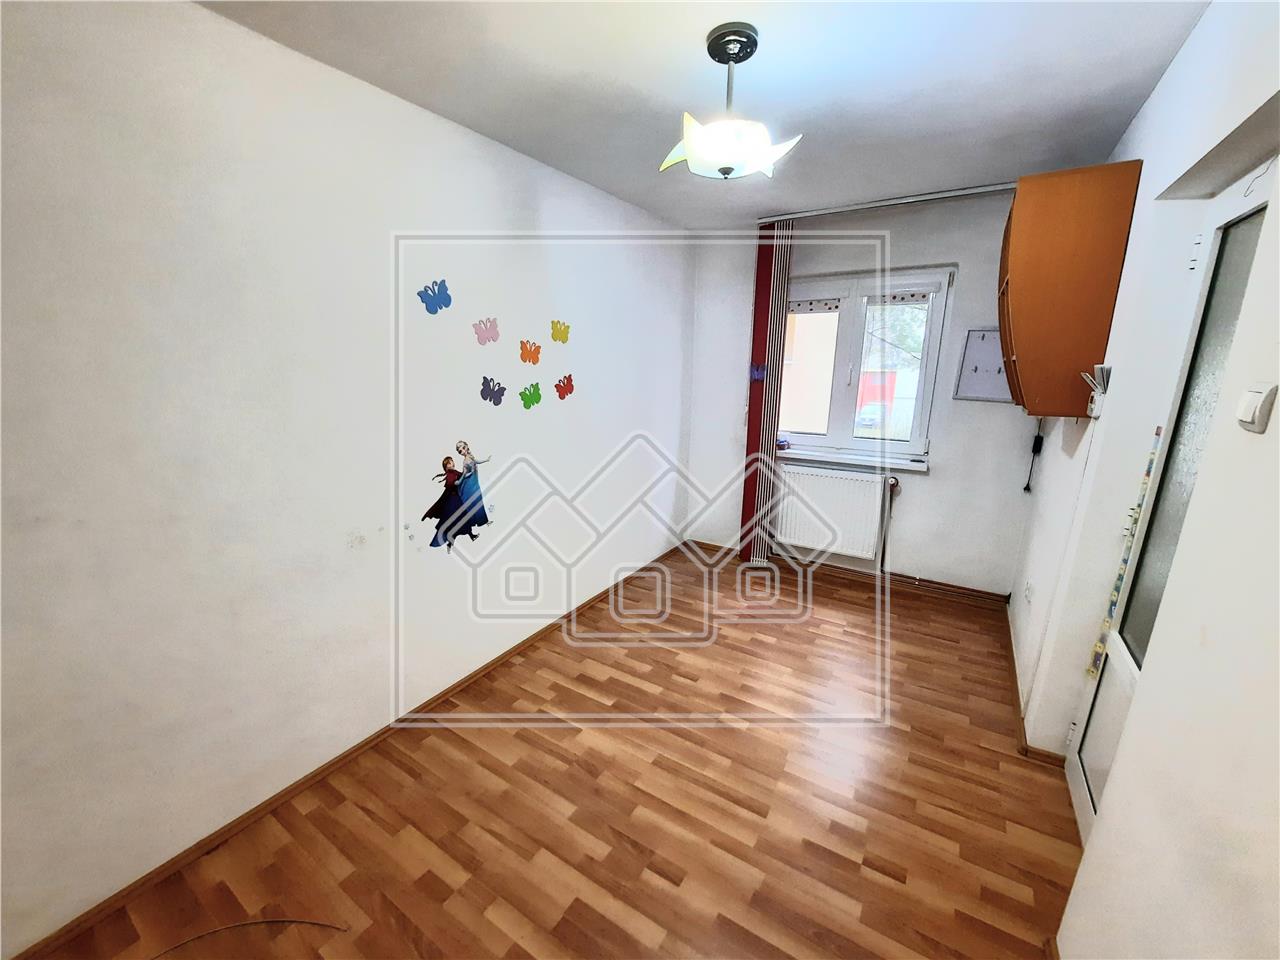 Apartment for rent in Alba Iulia - 37 sqm - 2 rooms - Cetate area